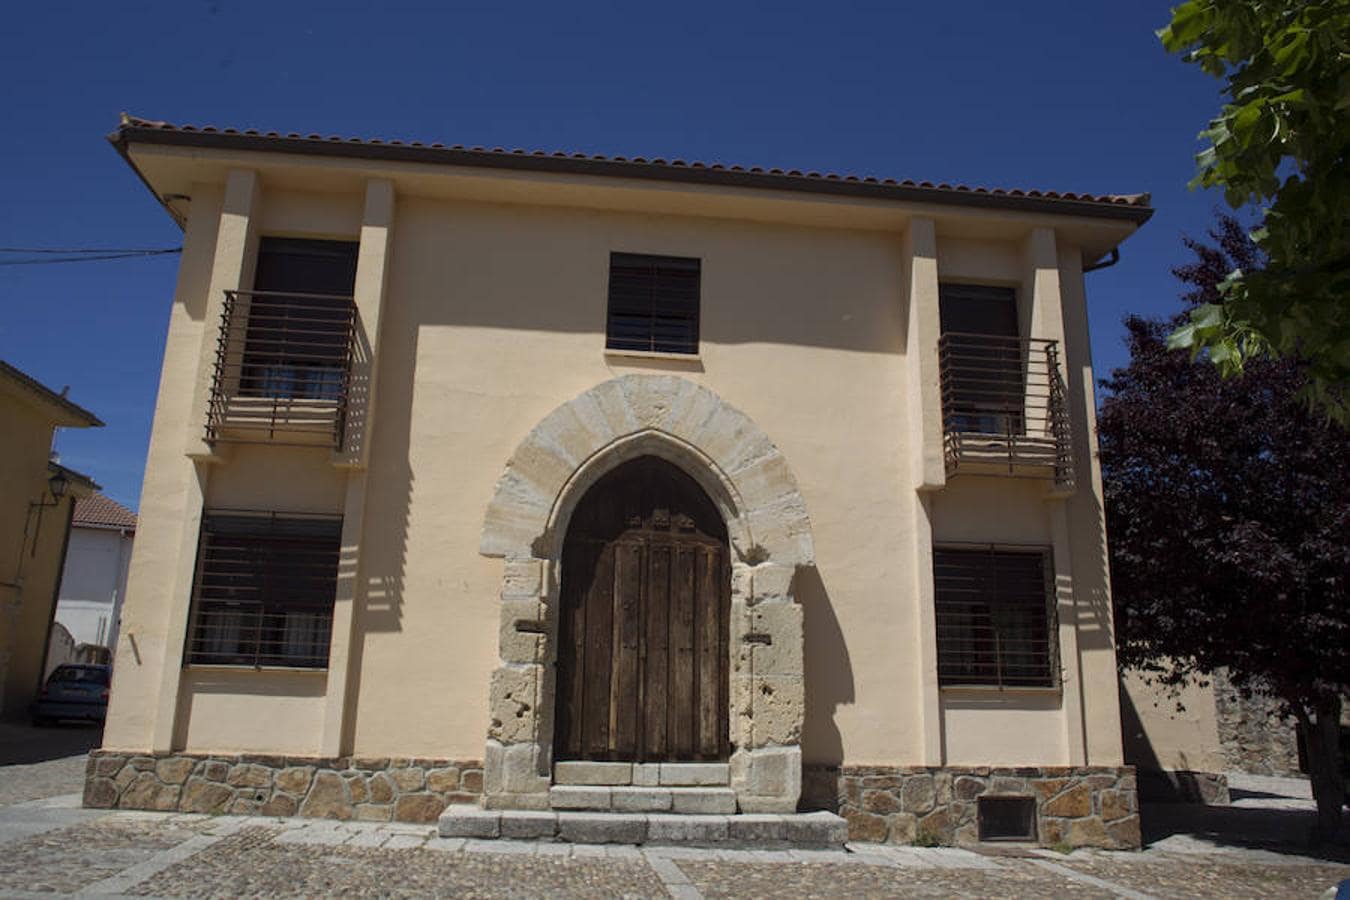 10. Puerta del antiguo hospital de San Salvador añadida a una construcción moderna, en Buitrago de Lozoya